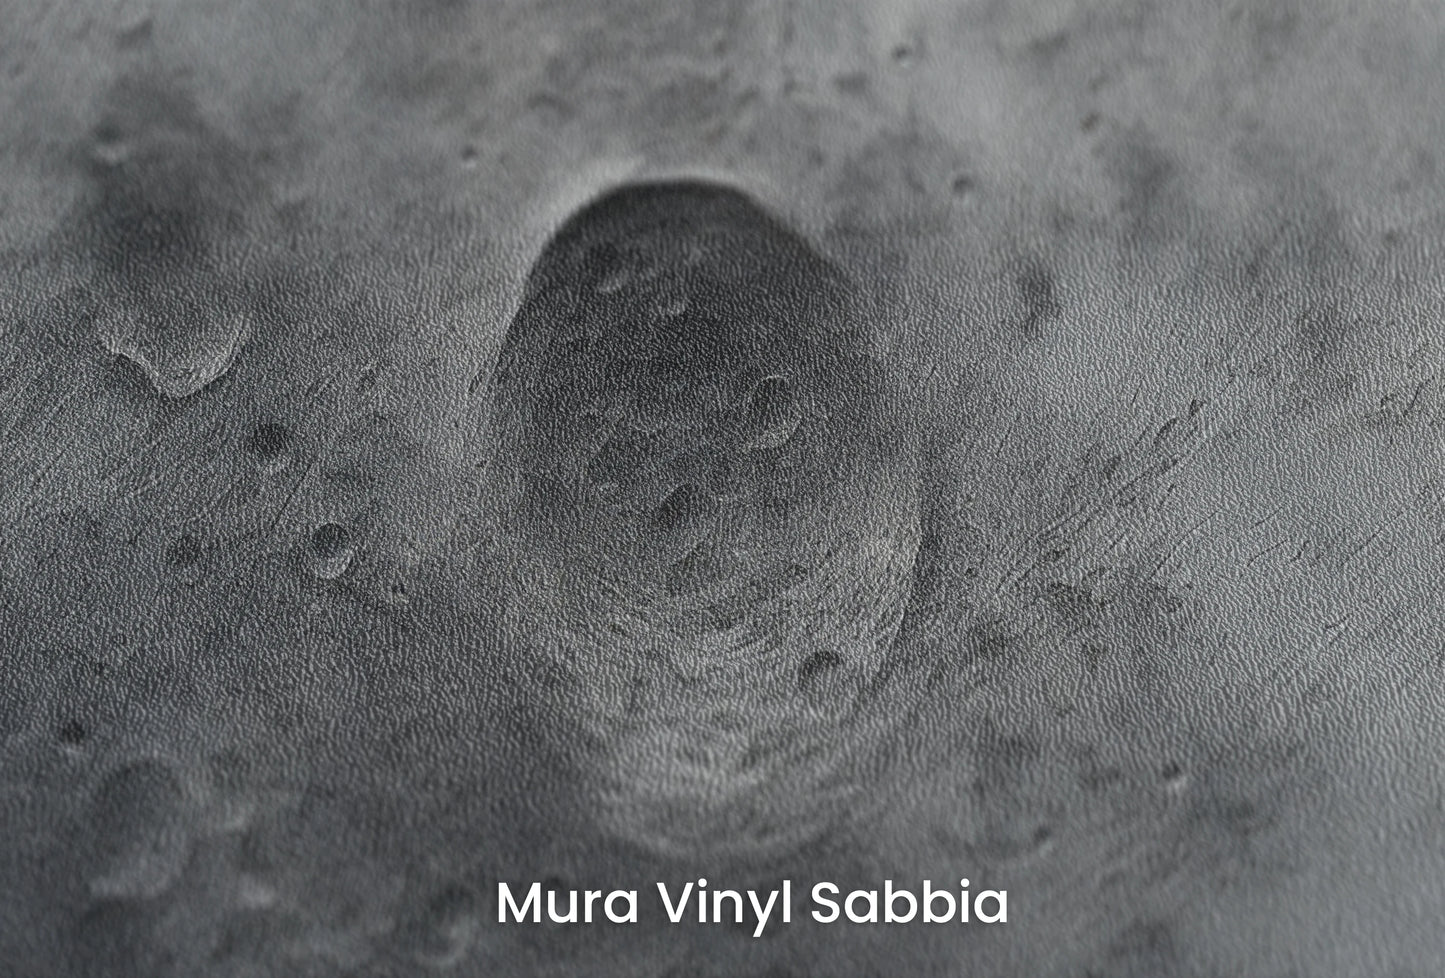 Zbliżenie na artystyczną fototapetę o nazwie Martian Swirl na podłożu Mura Vinyl Sabbia struktura grubego ziarna piasku.